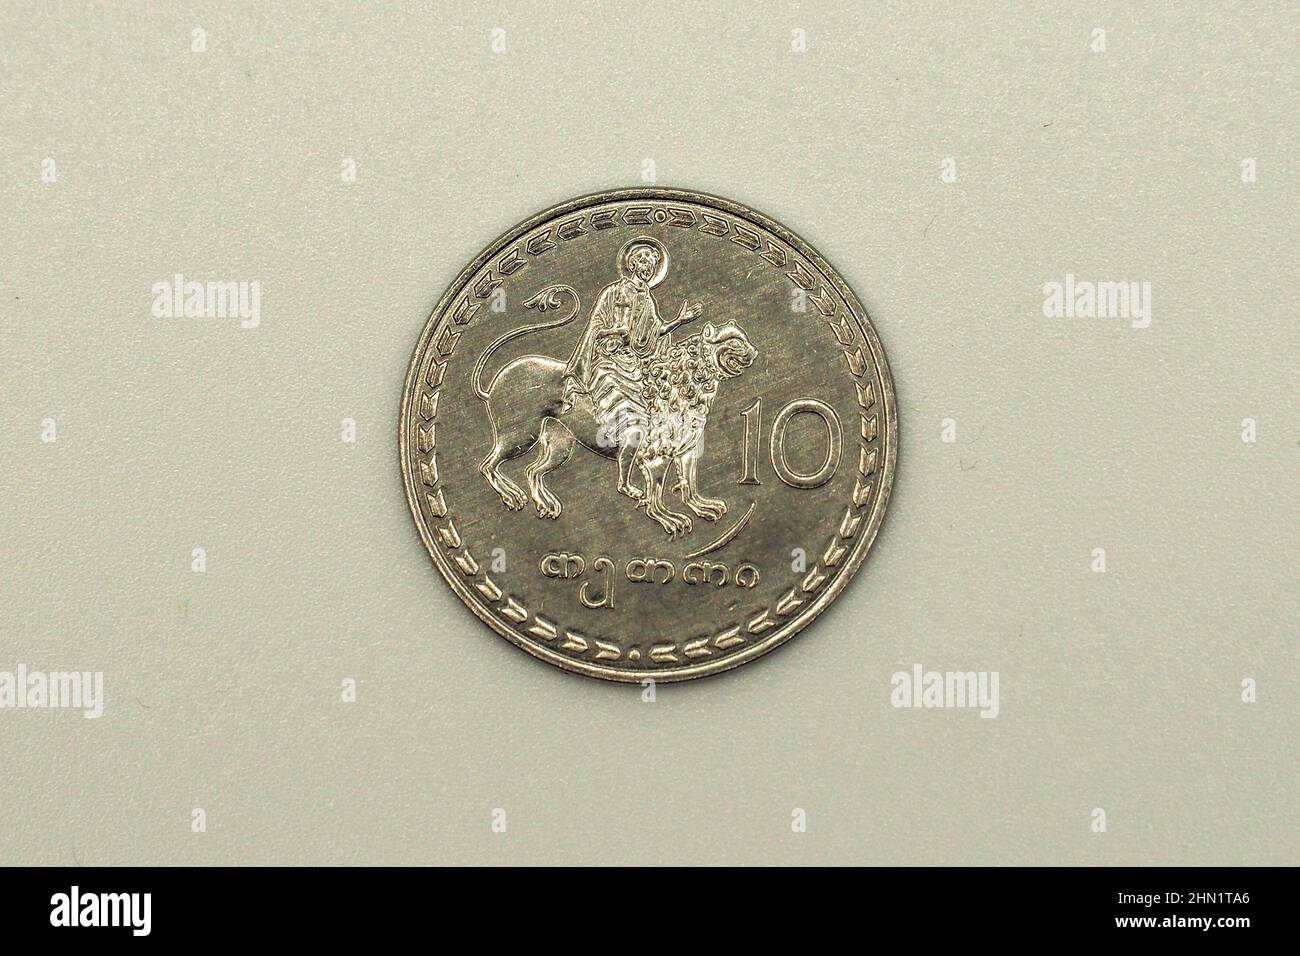 ten (10) tetri coin, Georgian lari (GEL), Georgia, Europe Stock Photo